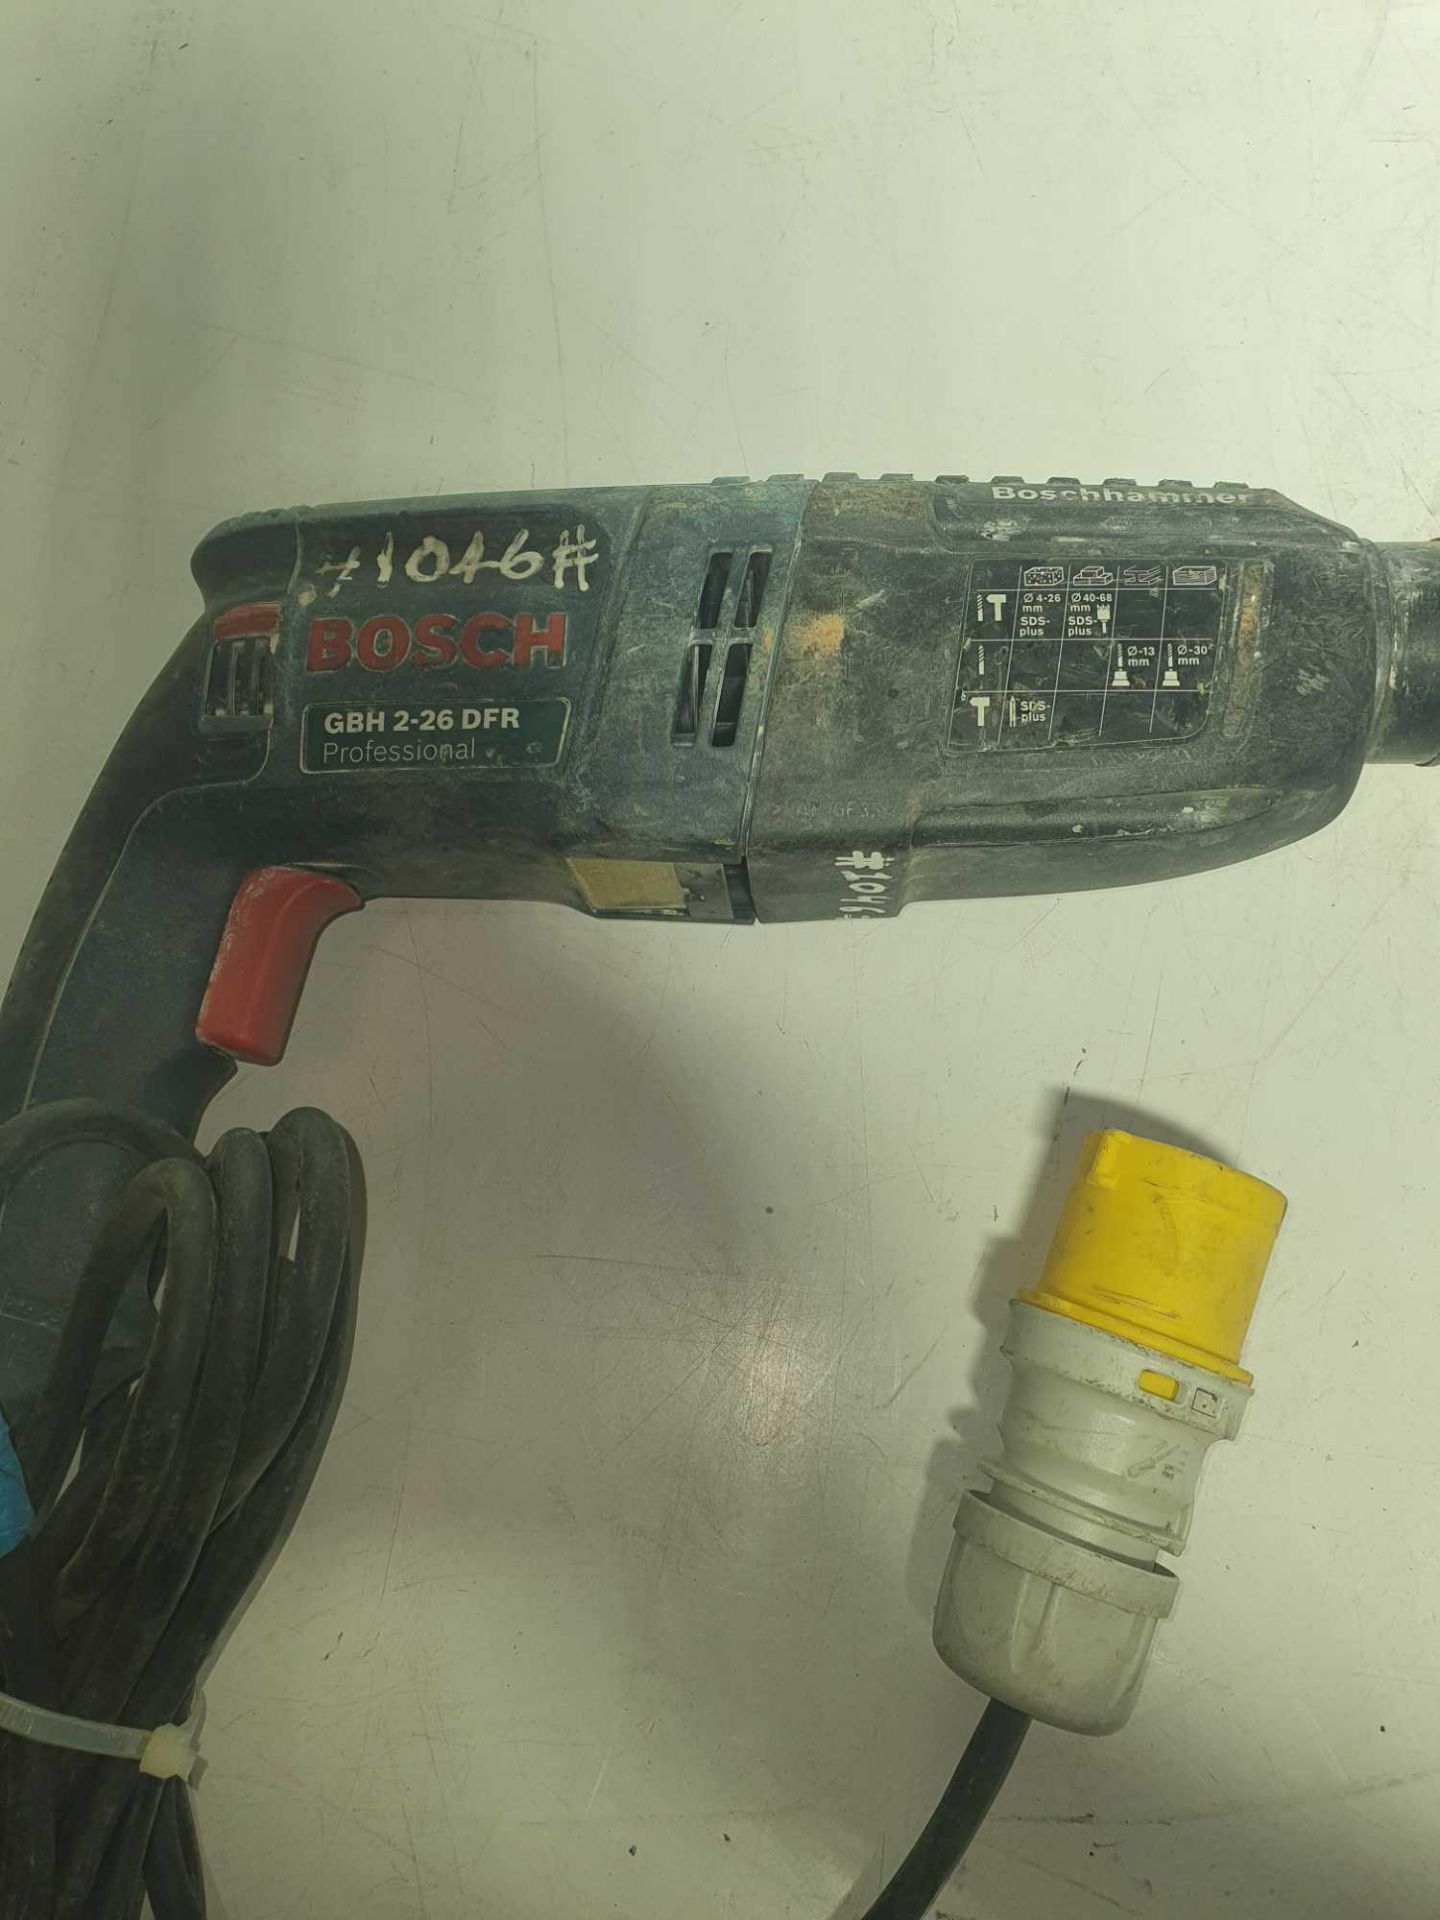 Bosch 110v rotary hammer drill - Image 2 of 2